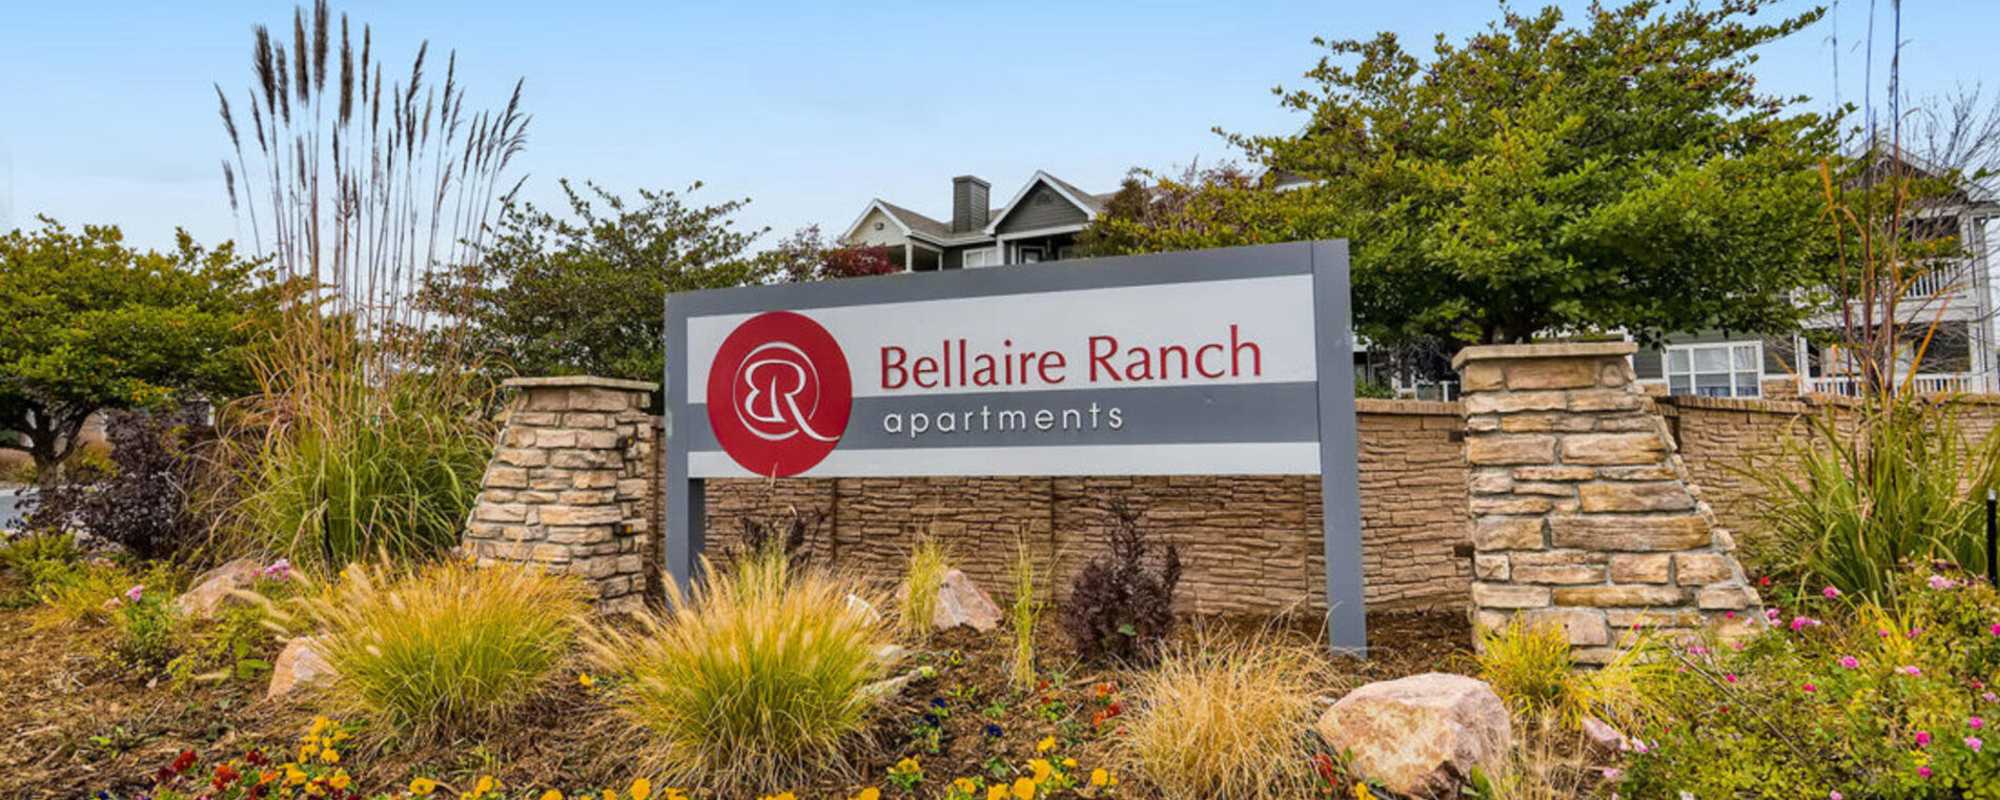 Apartments at Bellaire Ranch in Colorado Springs, Colorado